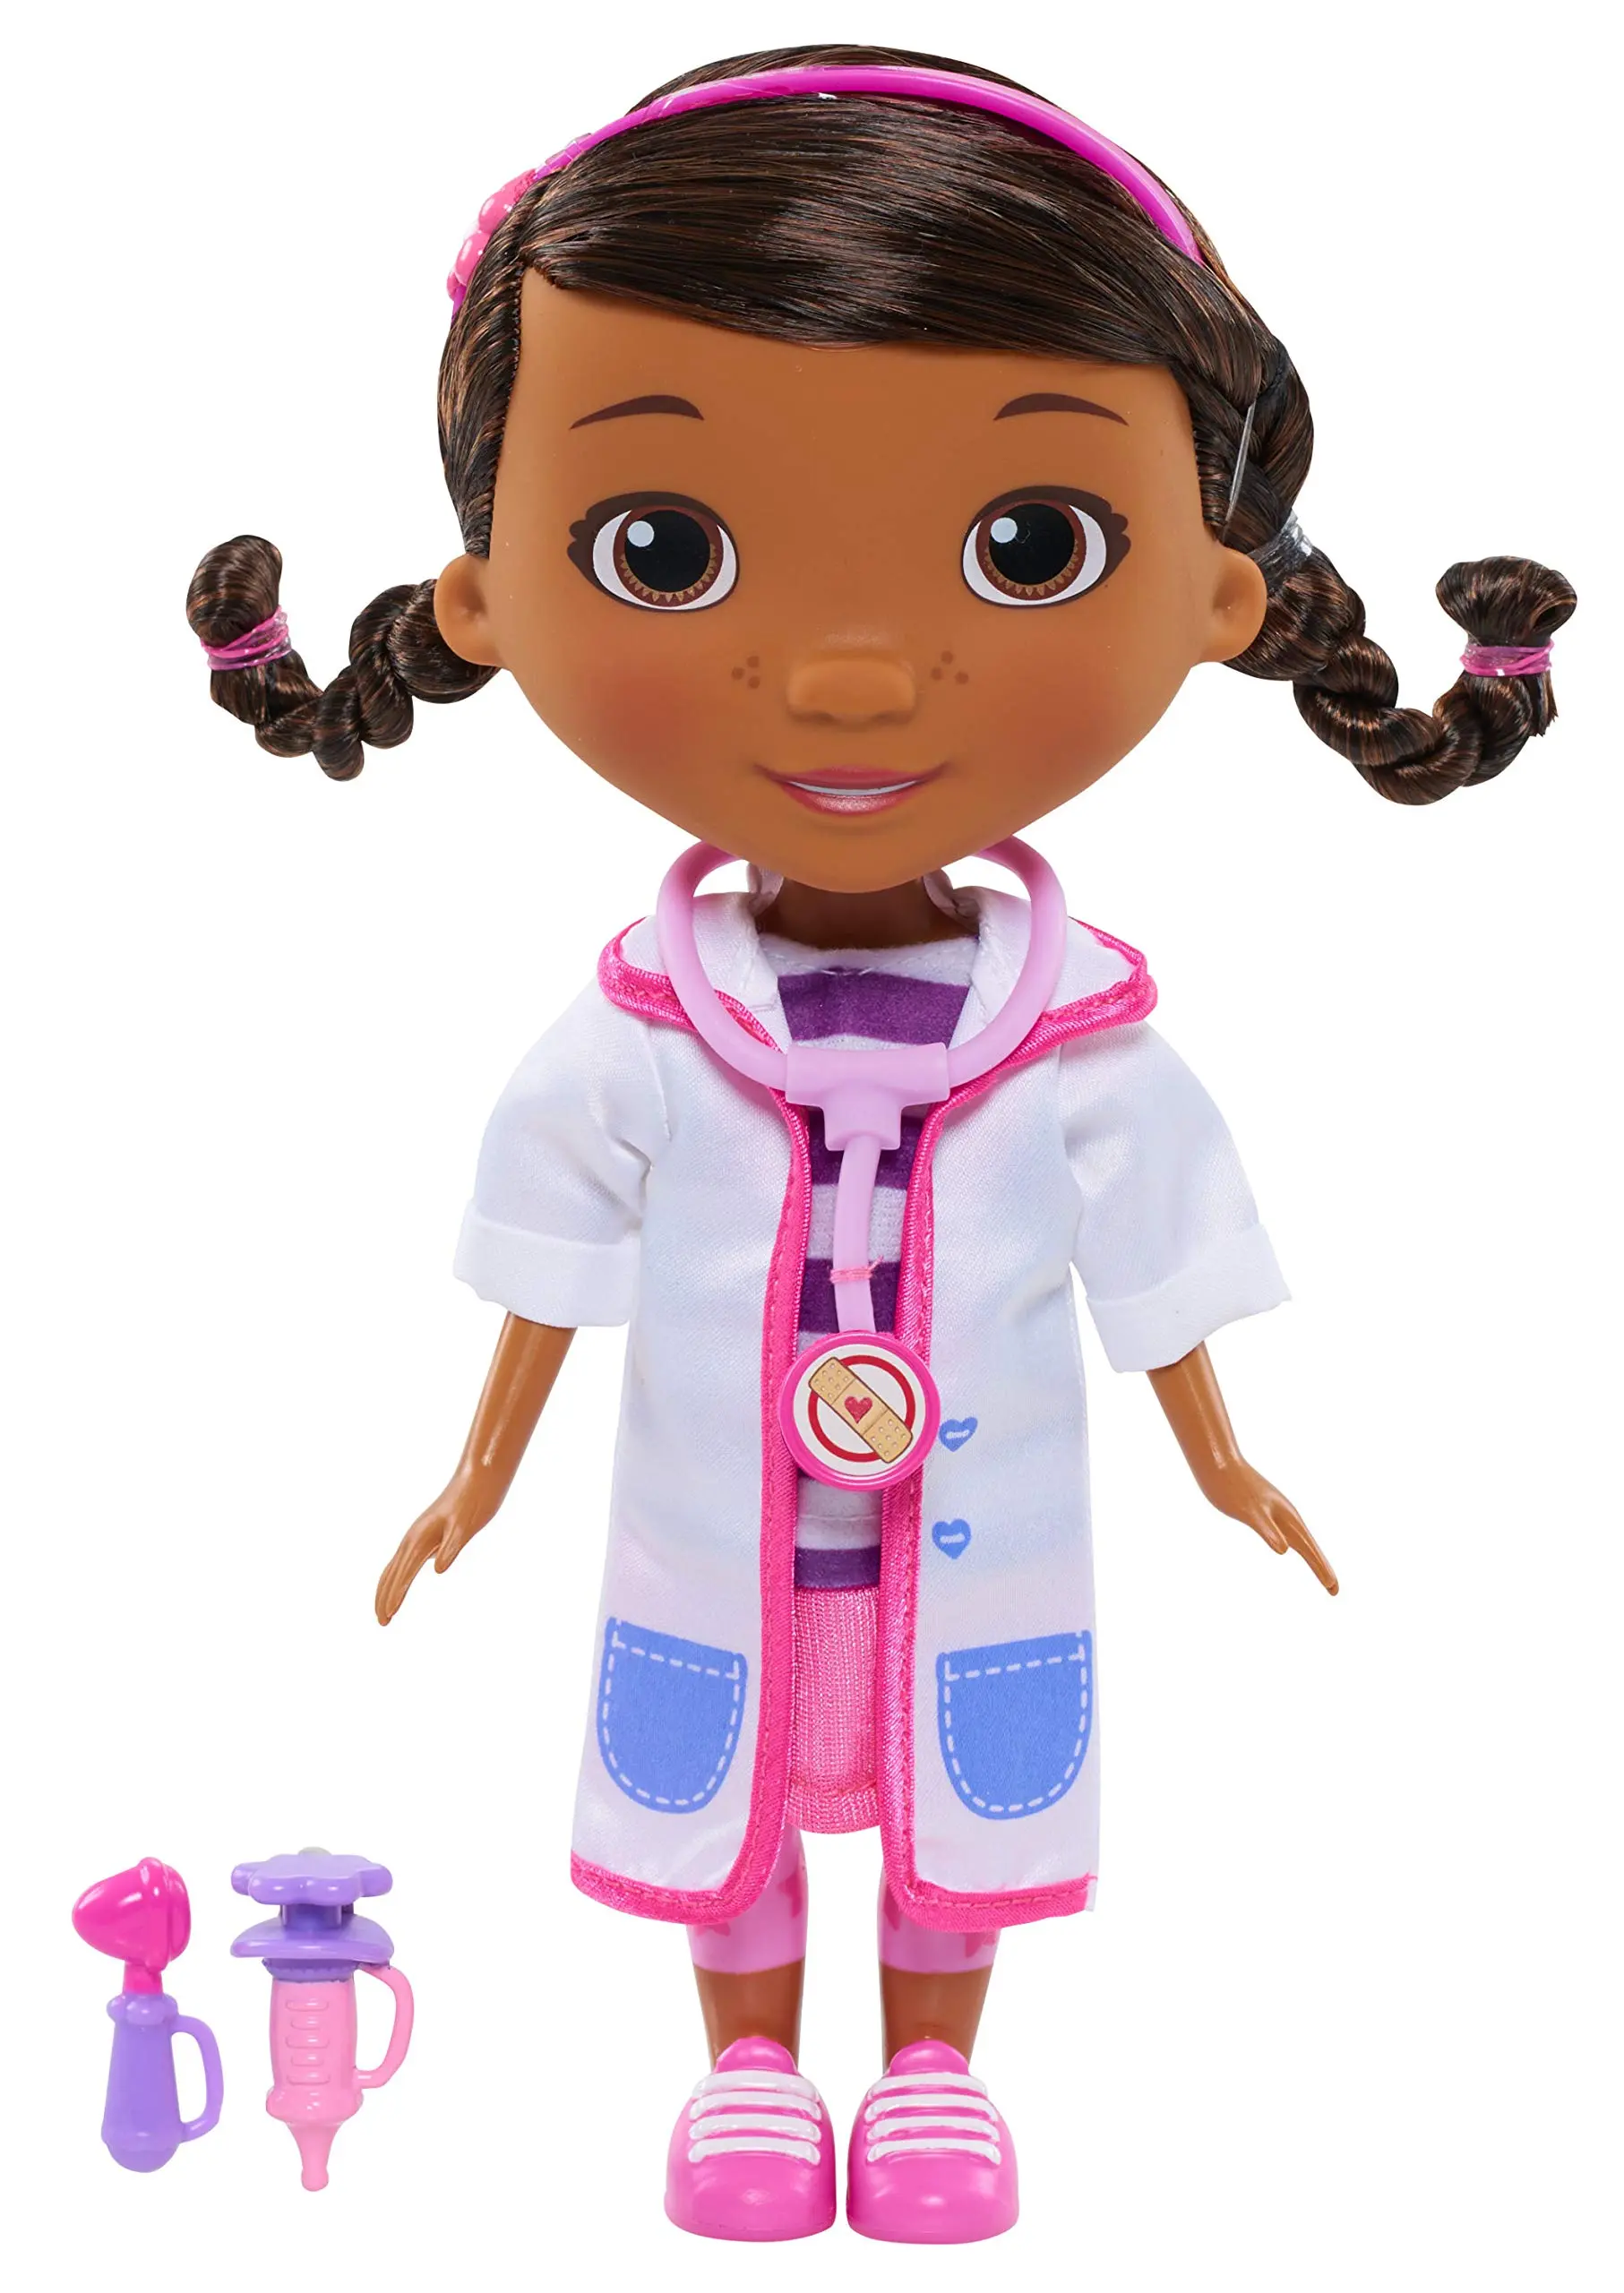 doctora juguete de acrilico - Que nos enseña la doctora juguetes